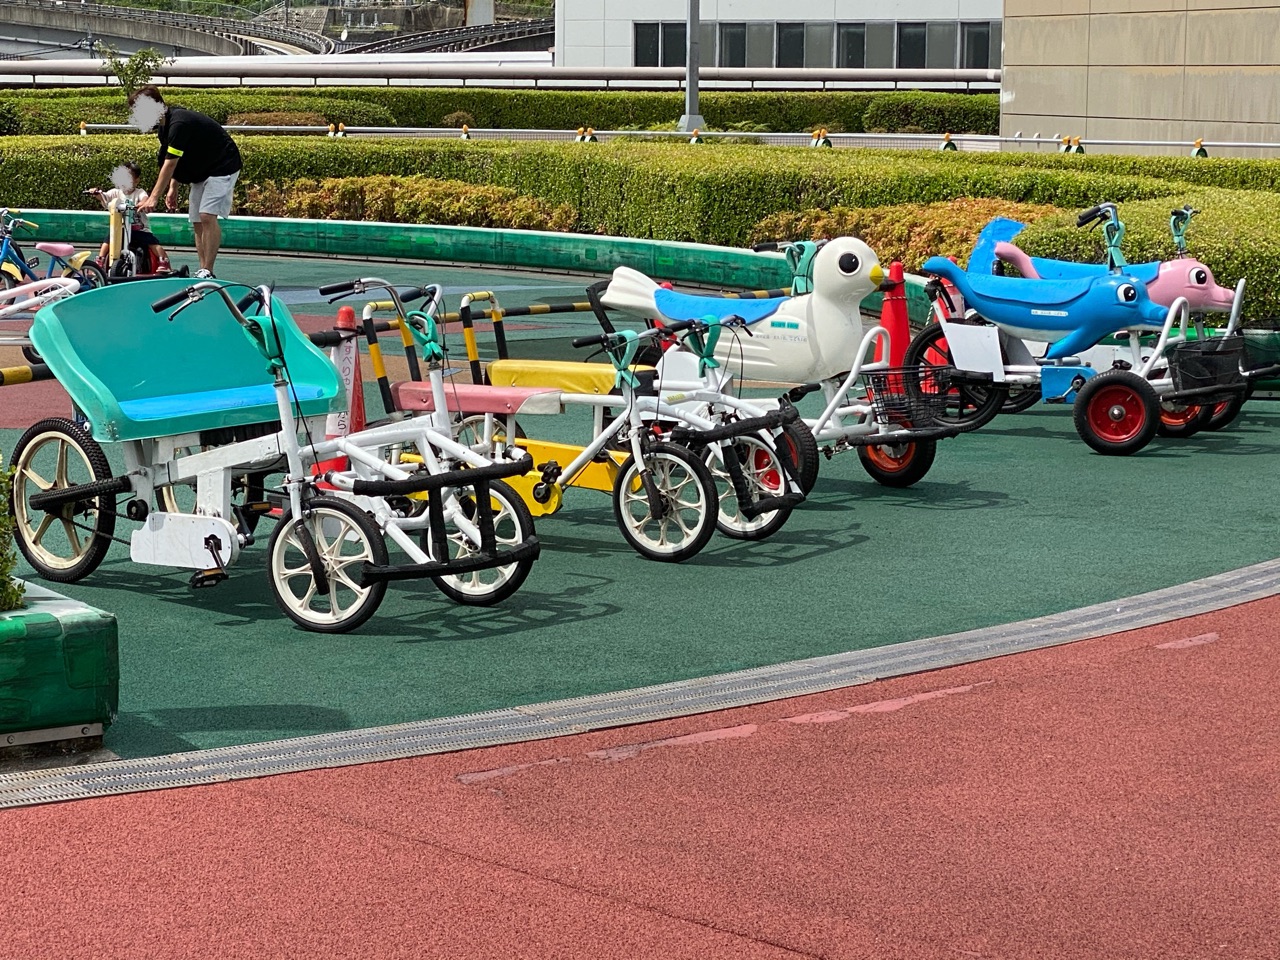 ヌマジ交通ミュージアム(広島市交通科学館)のおもしろ自転車乗車